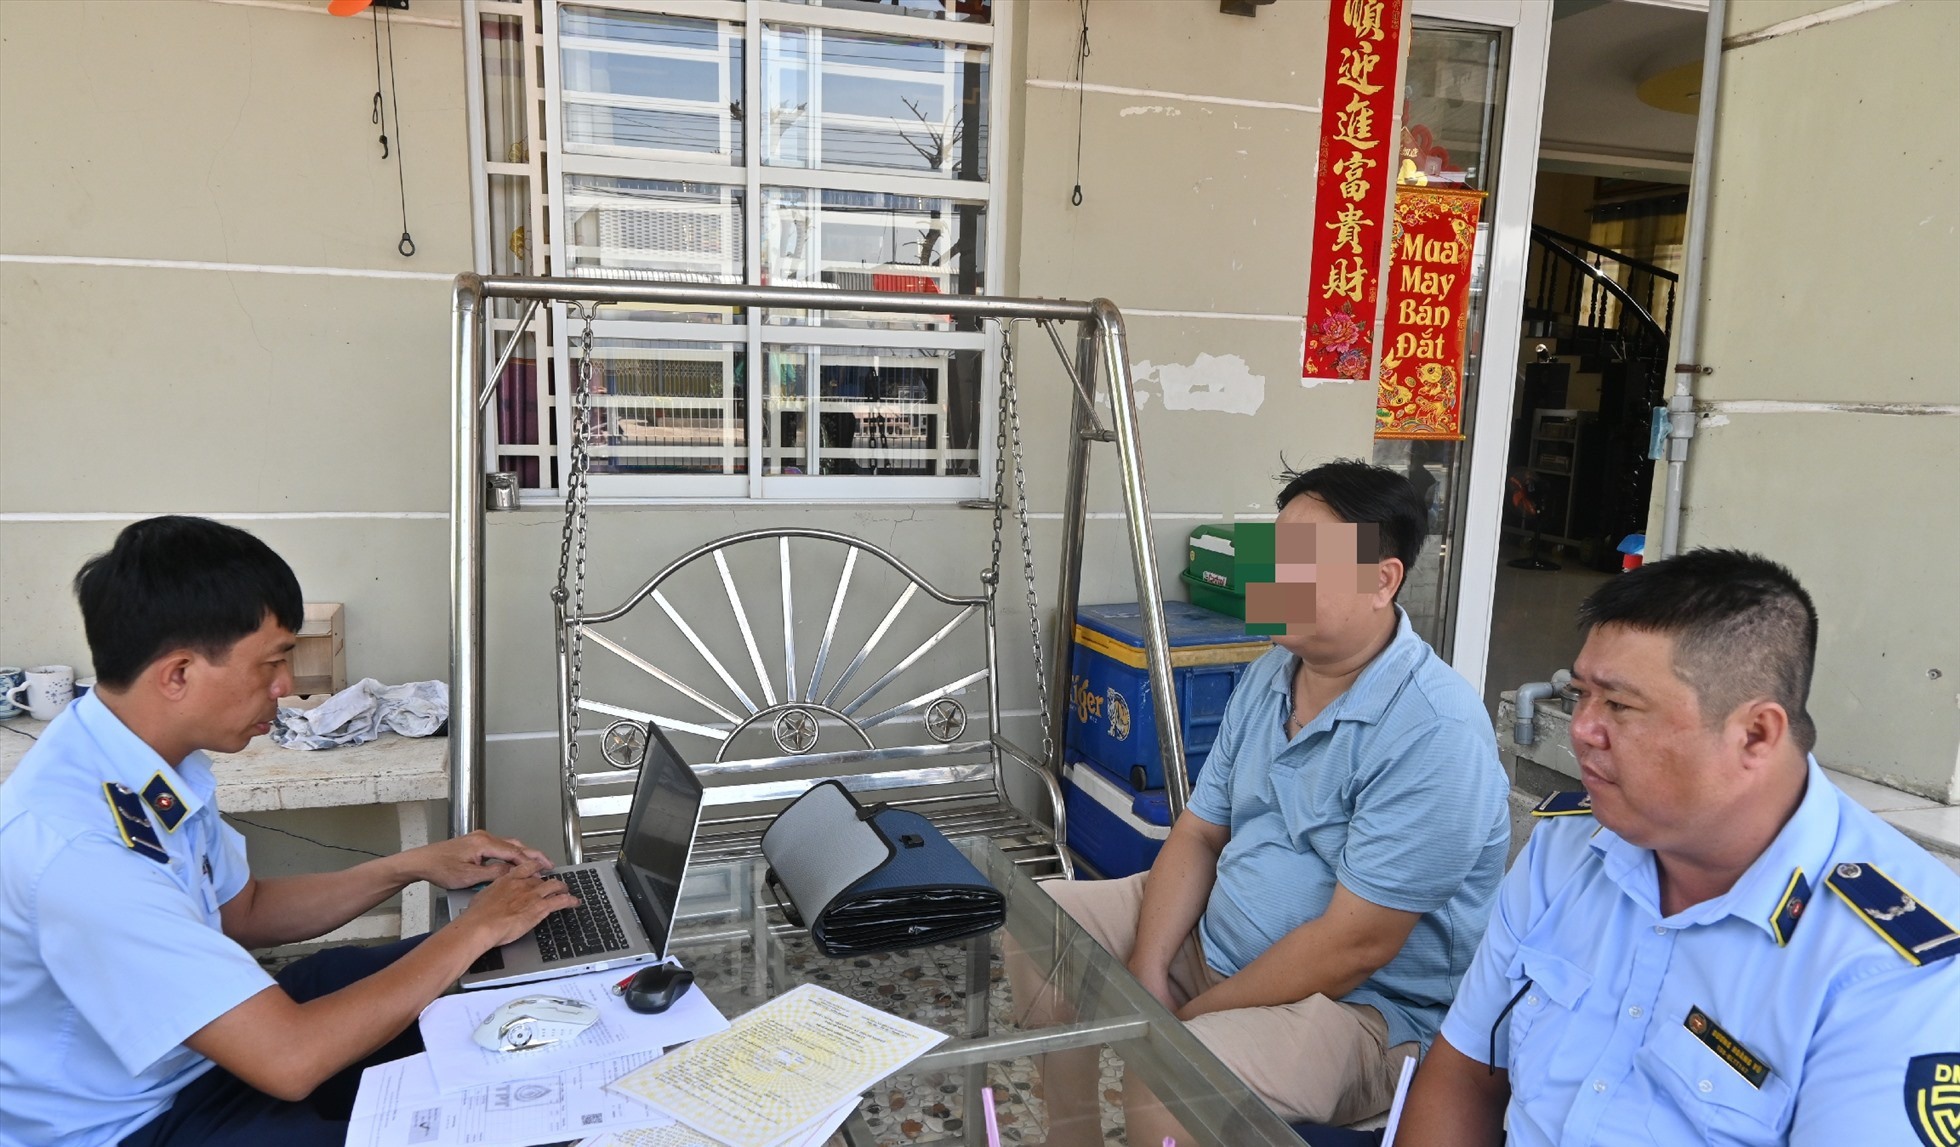 Lực lượng Quản lý thị trường tỉnh An Giang làm việc với các chủ cửa hàng kinh doanh xăng dầu trên địa bàn huyện An Phú (tỉnh An Giang). Ảnh: Thành Nhân